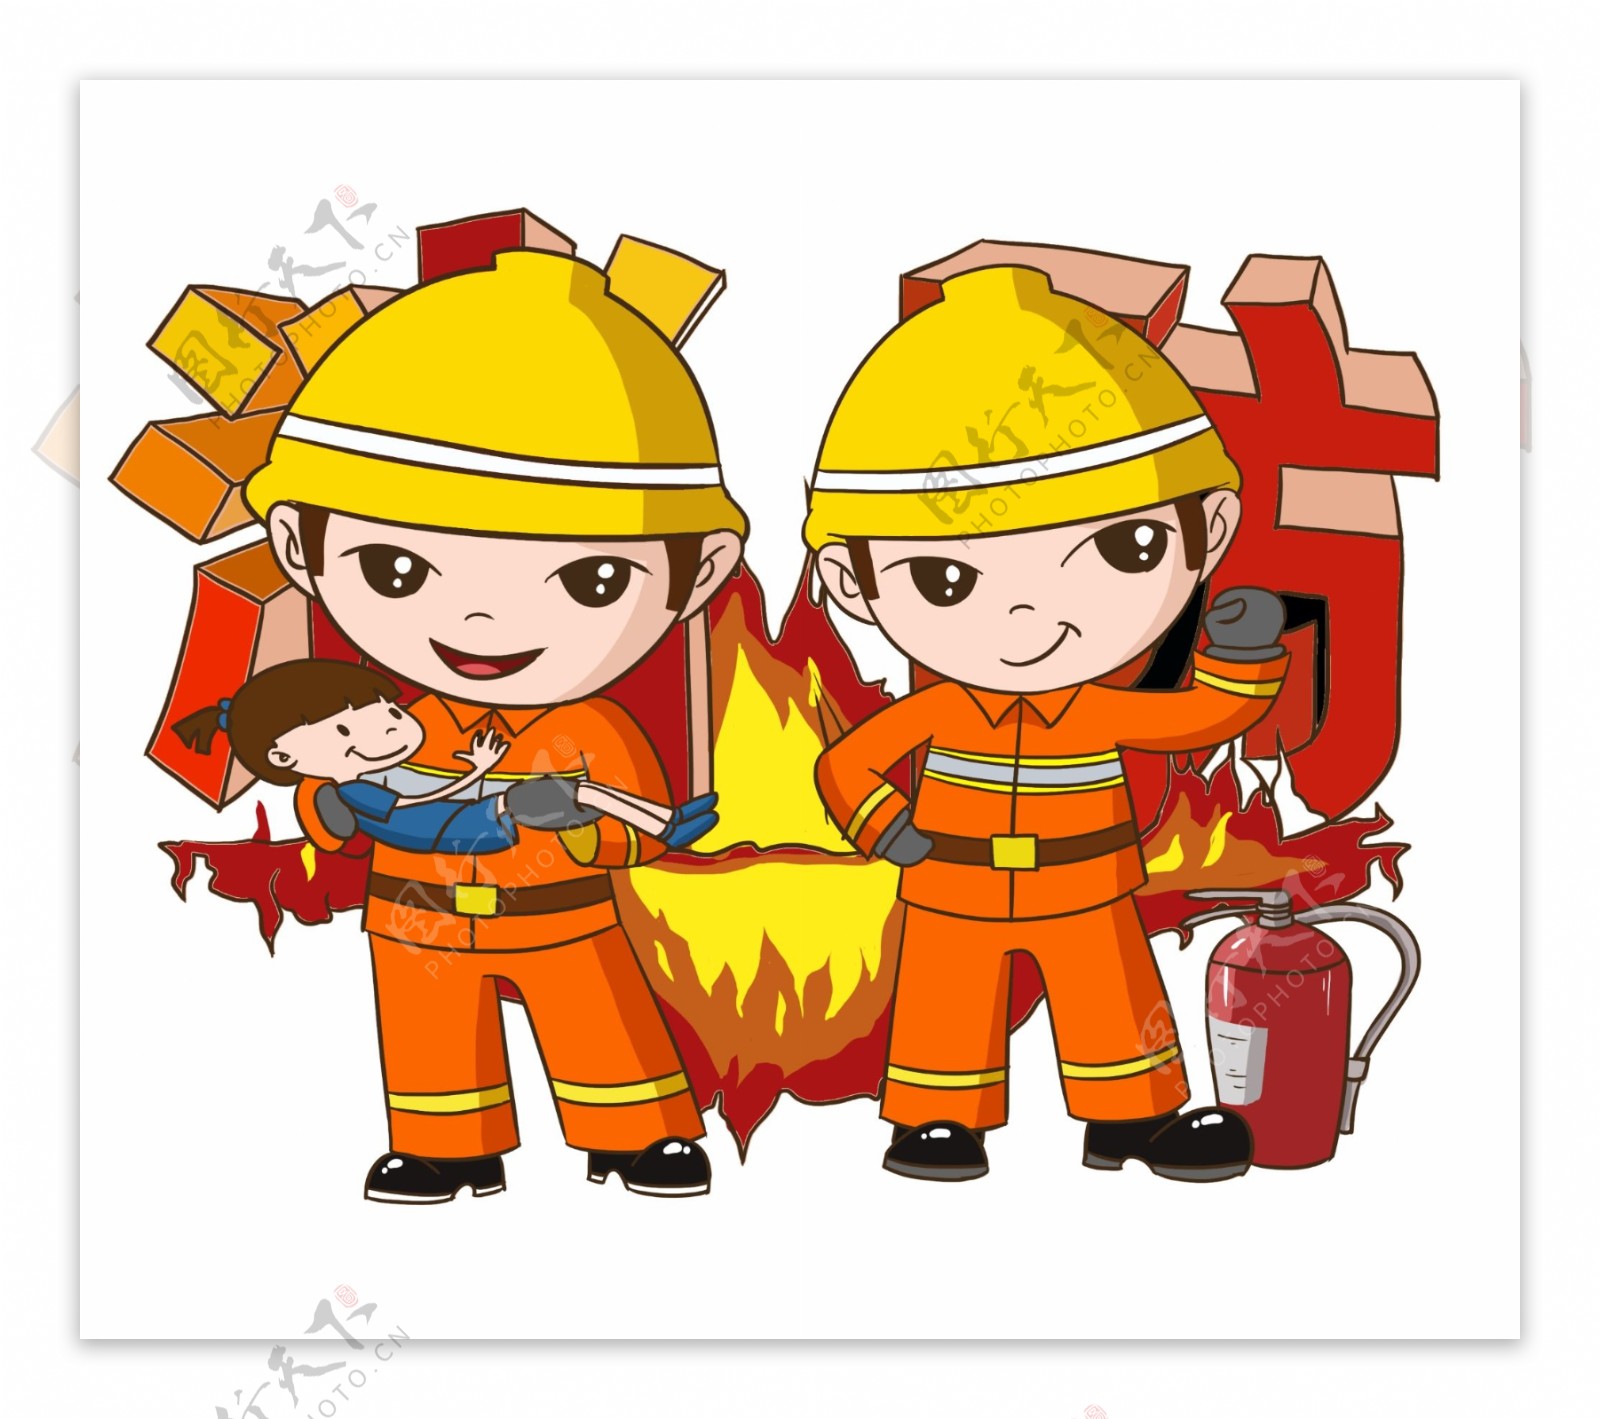 加强消防安全强化消防意识